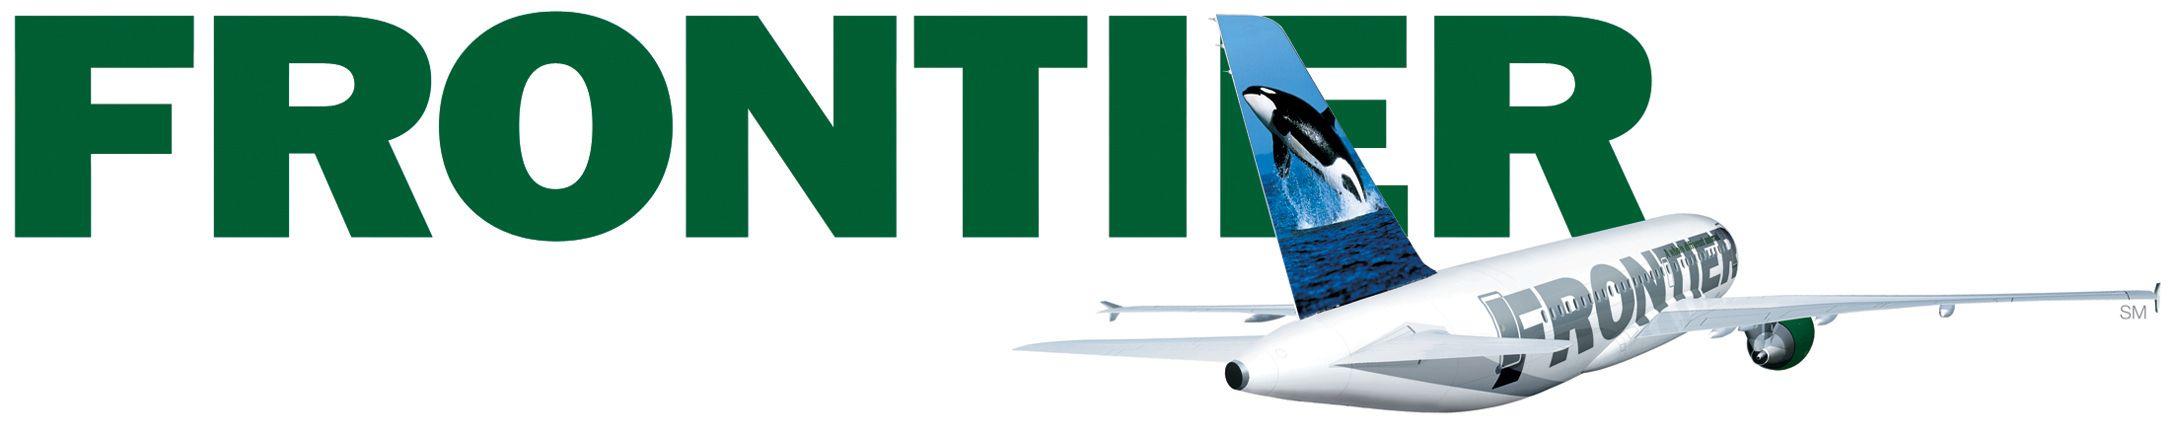 Frontier Airlines Logo - Frontier airlines Logos